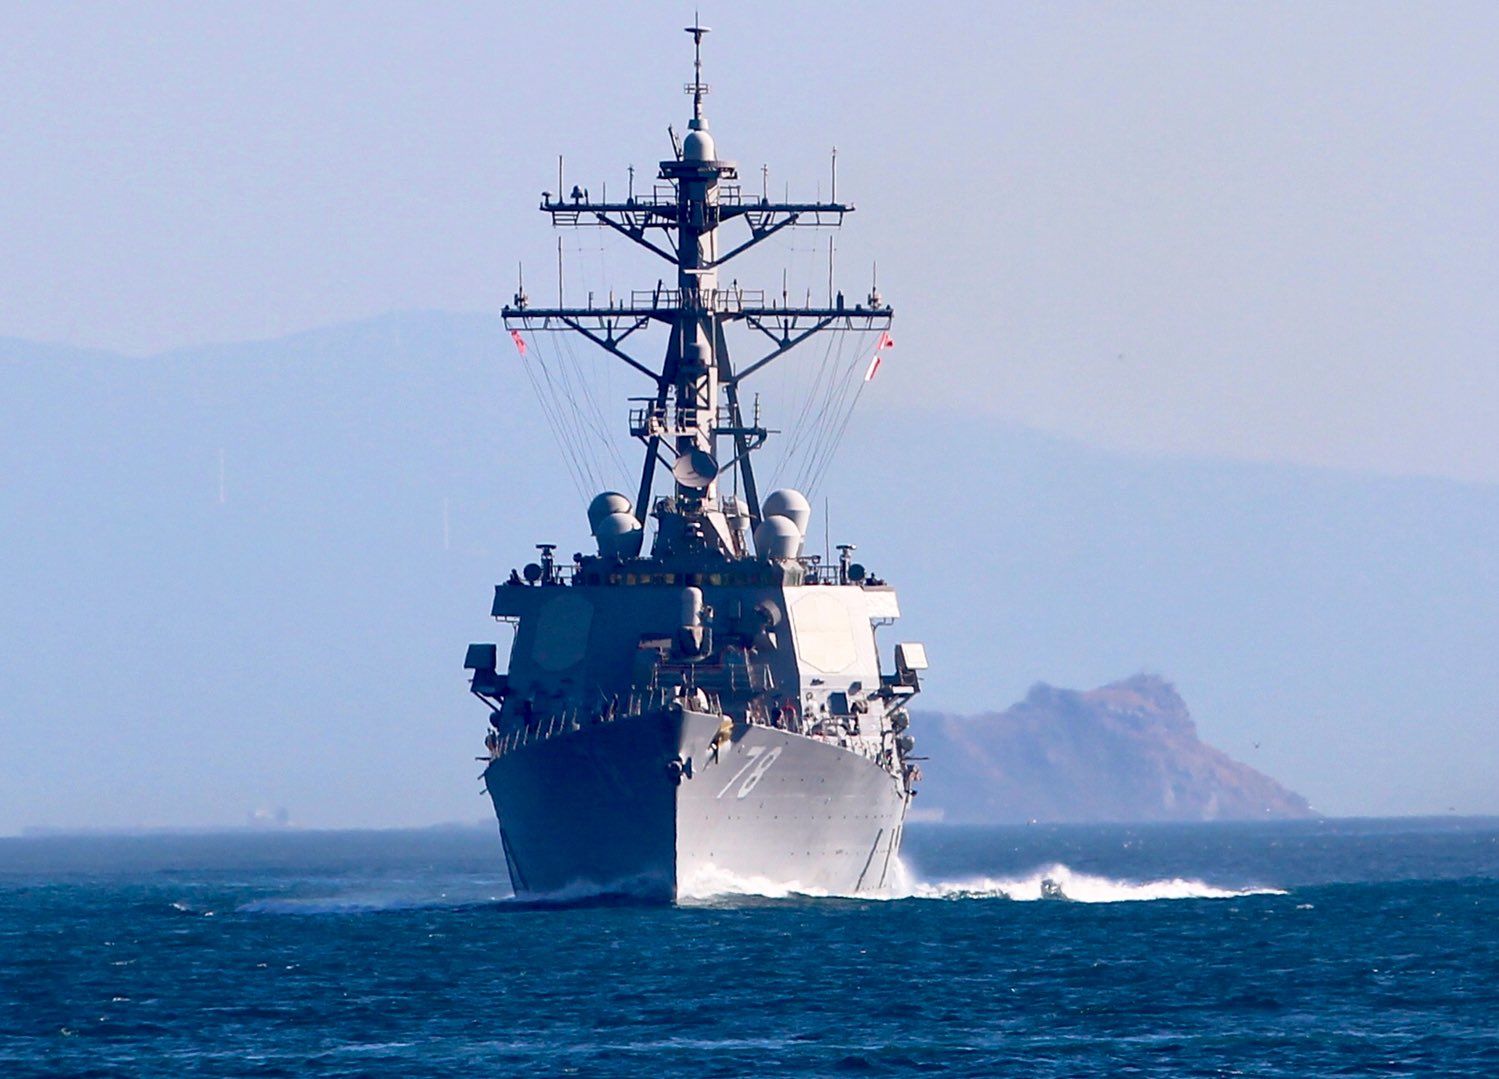 ВМС США начинают операции в Черном море: в регион направлен эсминец USS Porter